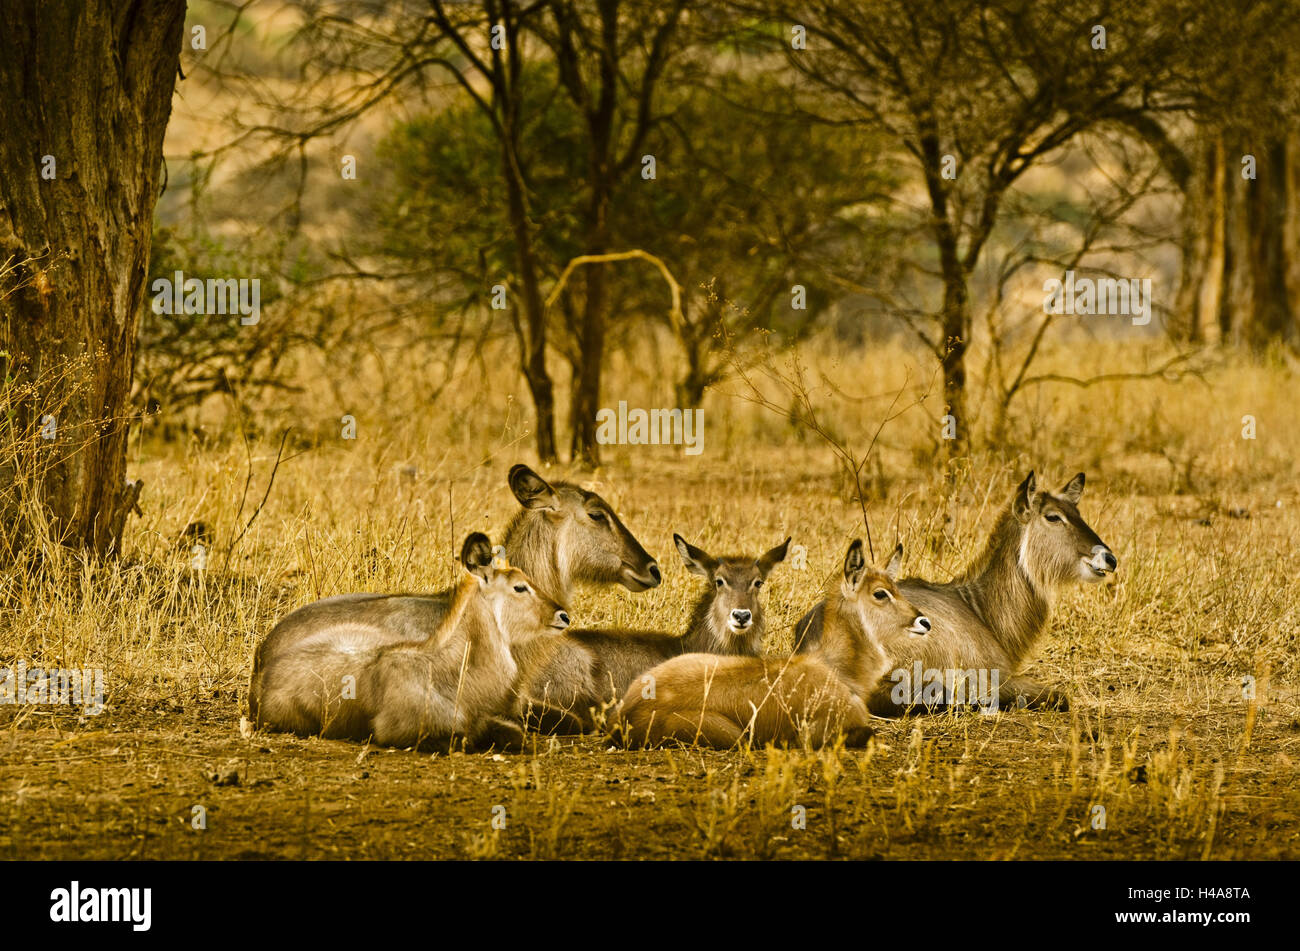 Africa, East Africa, Tanzania, Tarangire National Park, animal, Stock Photo